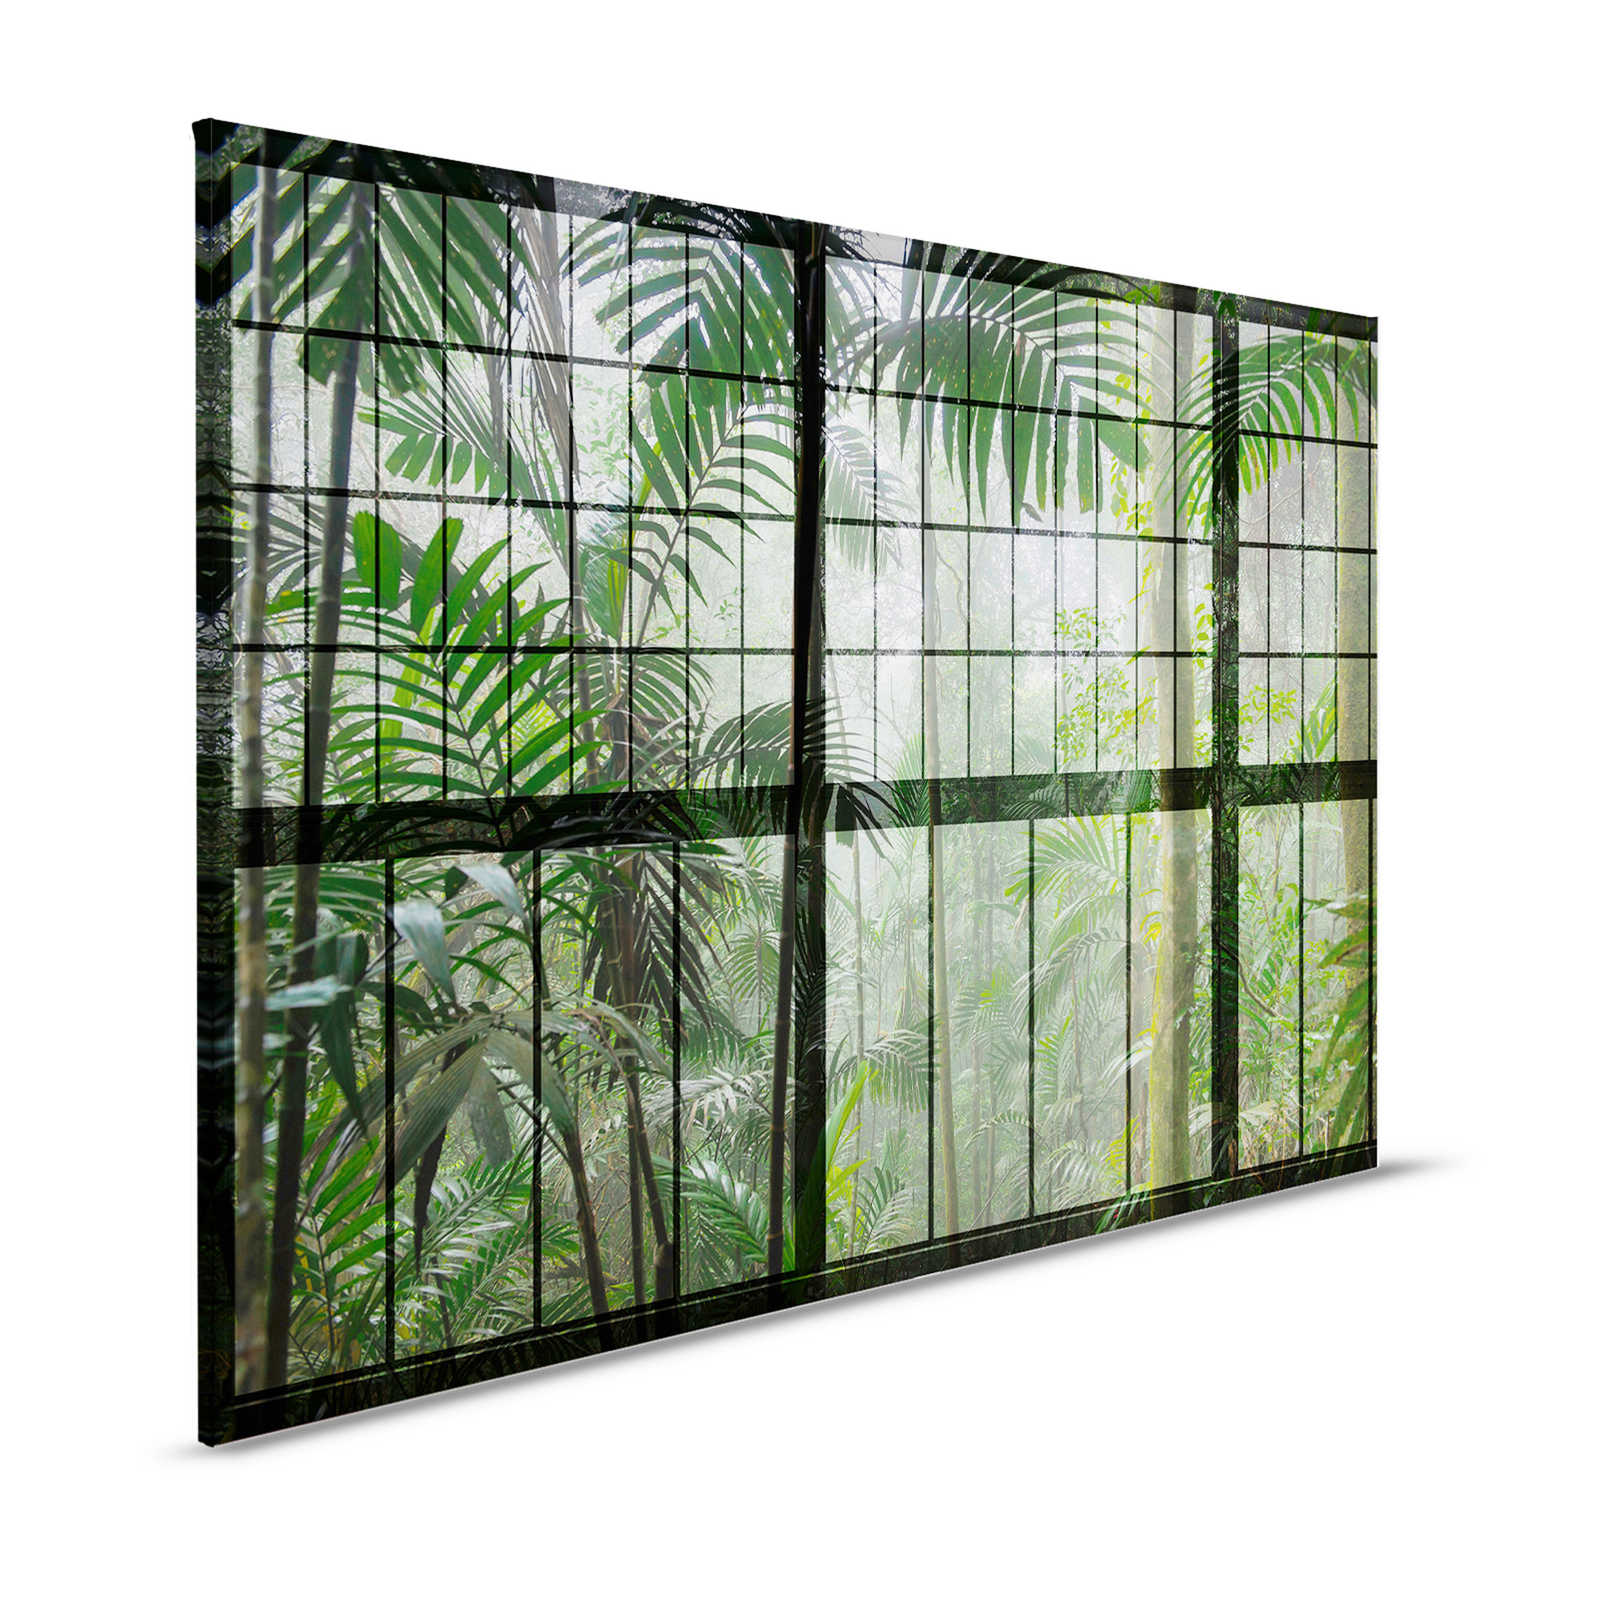 Rainforest 1 - Quadro su tela con finestra a soppalco e vista sulla giungla - 1,20 m x 0,80 m
